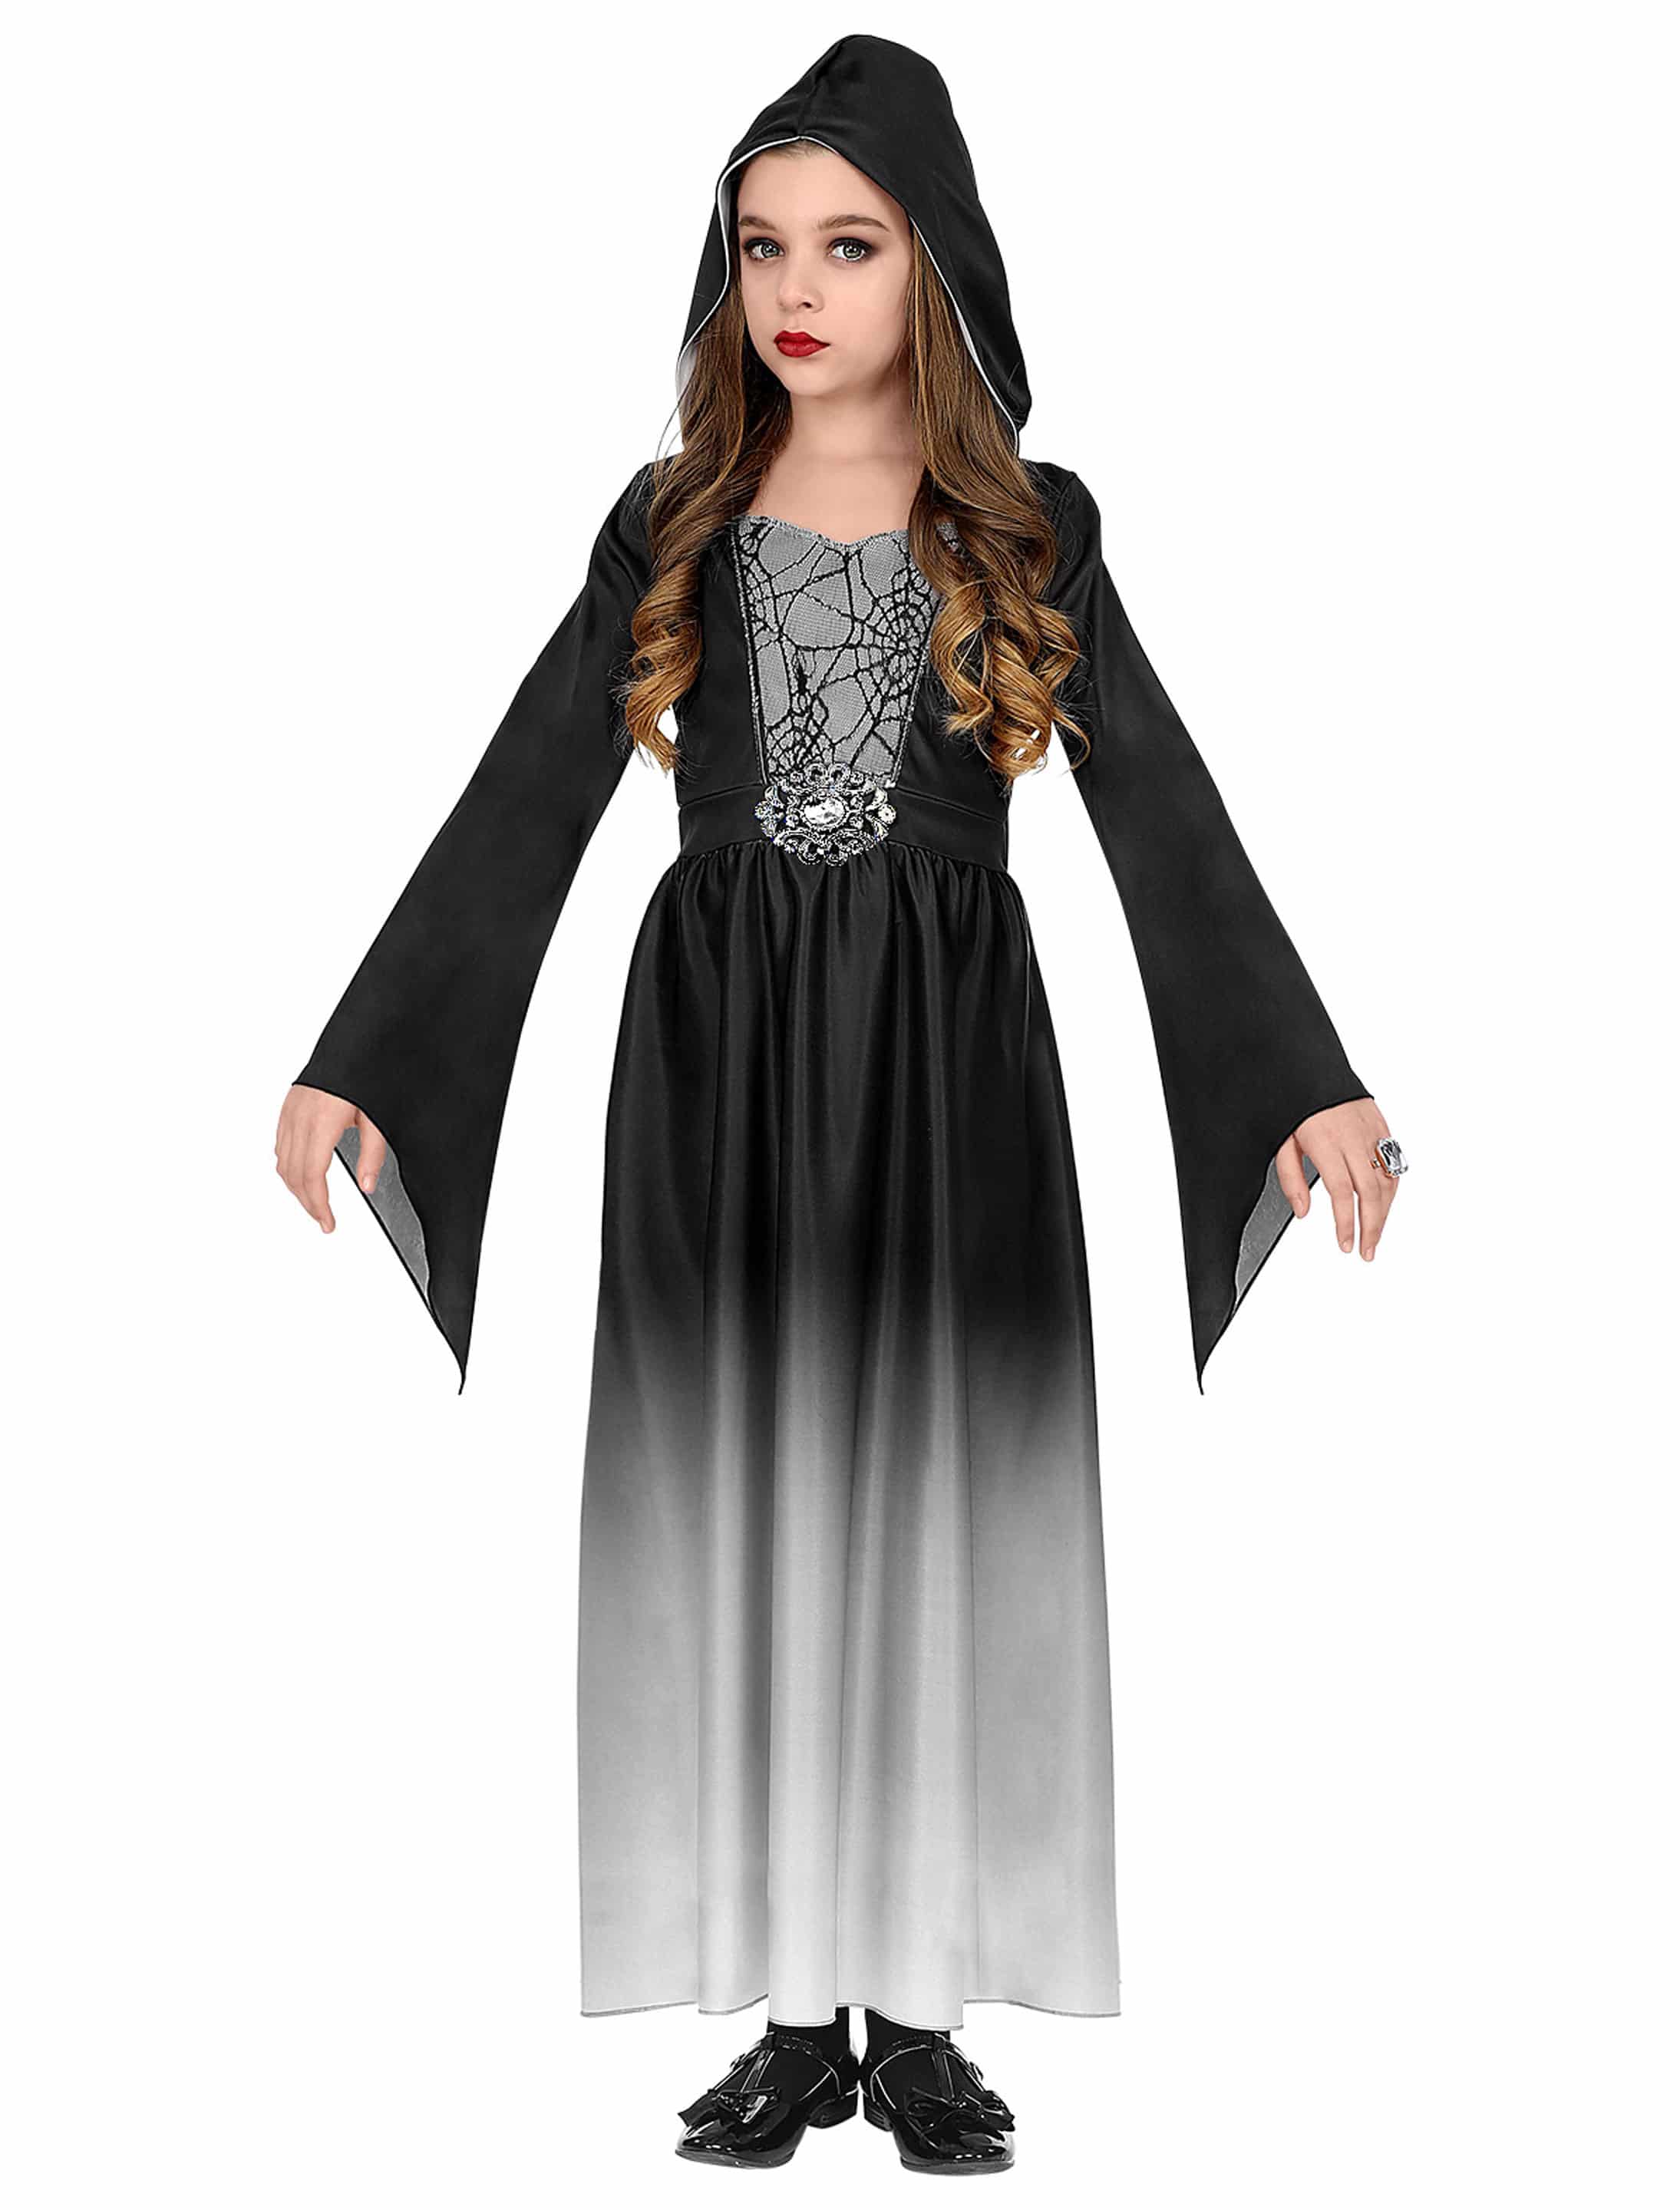 Kleid Gothic Girl schwarz/weiß 158